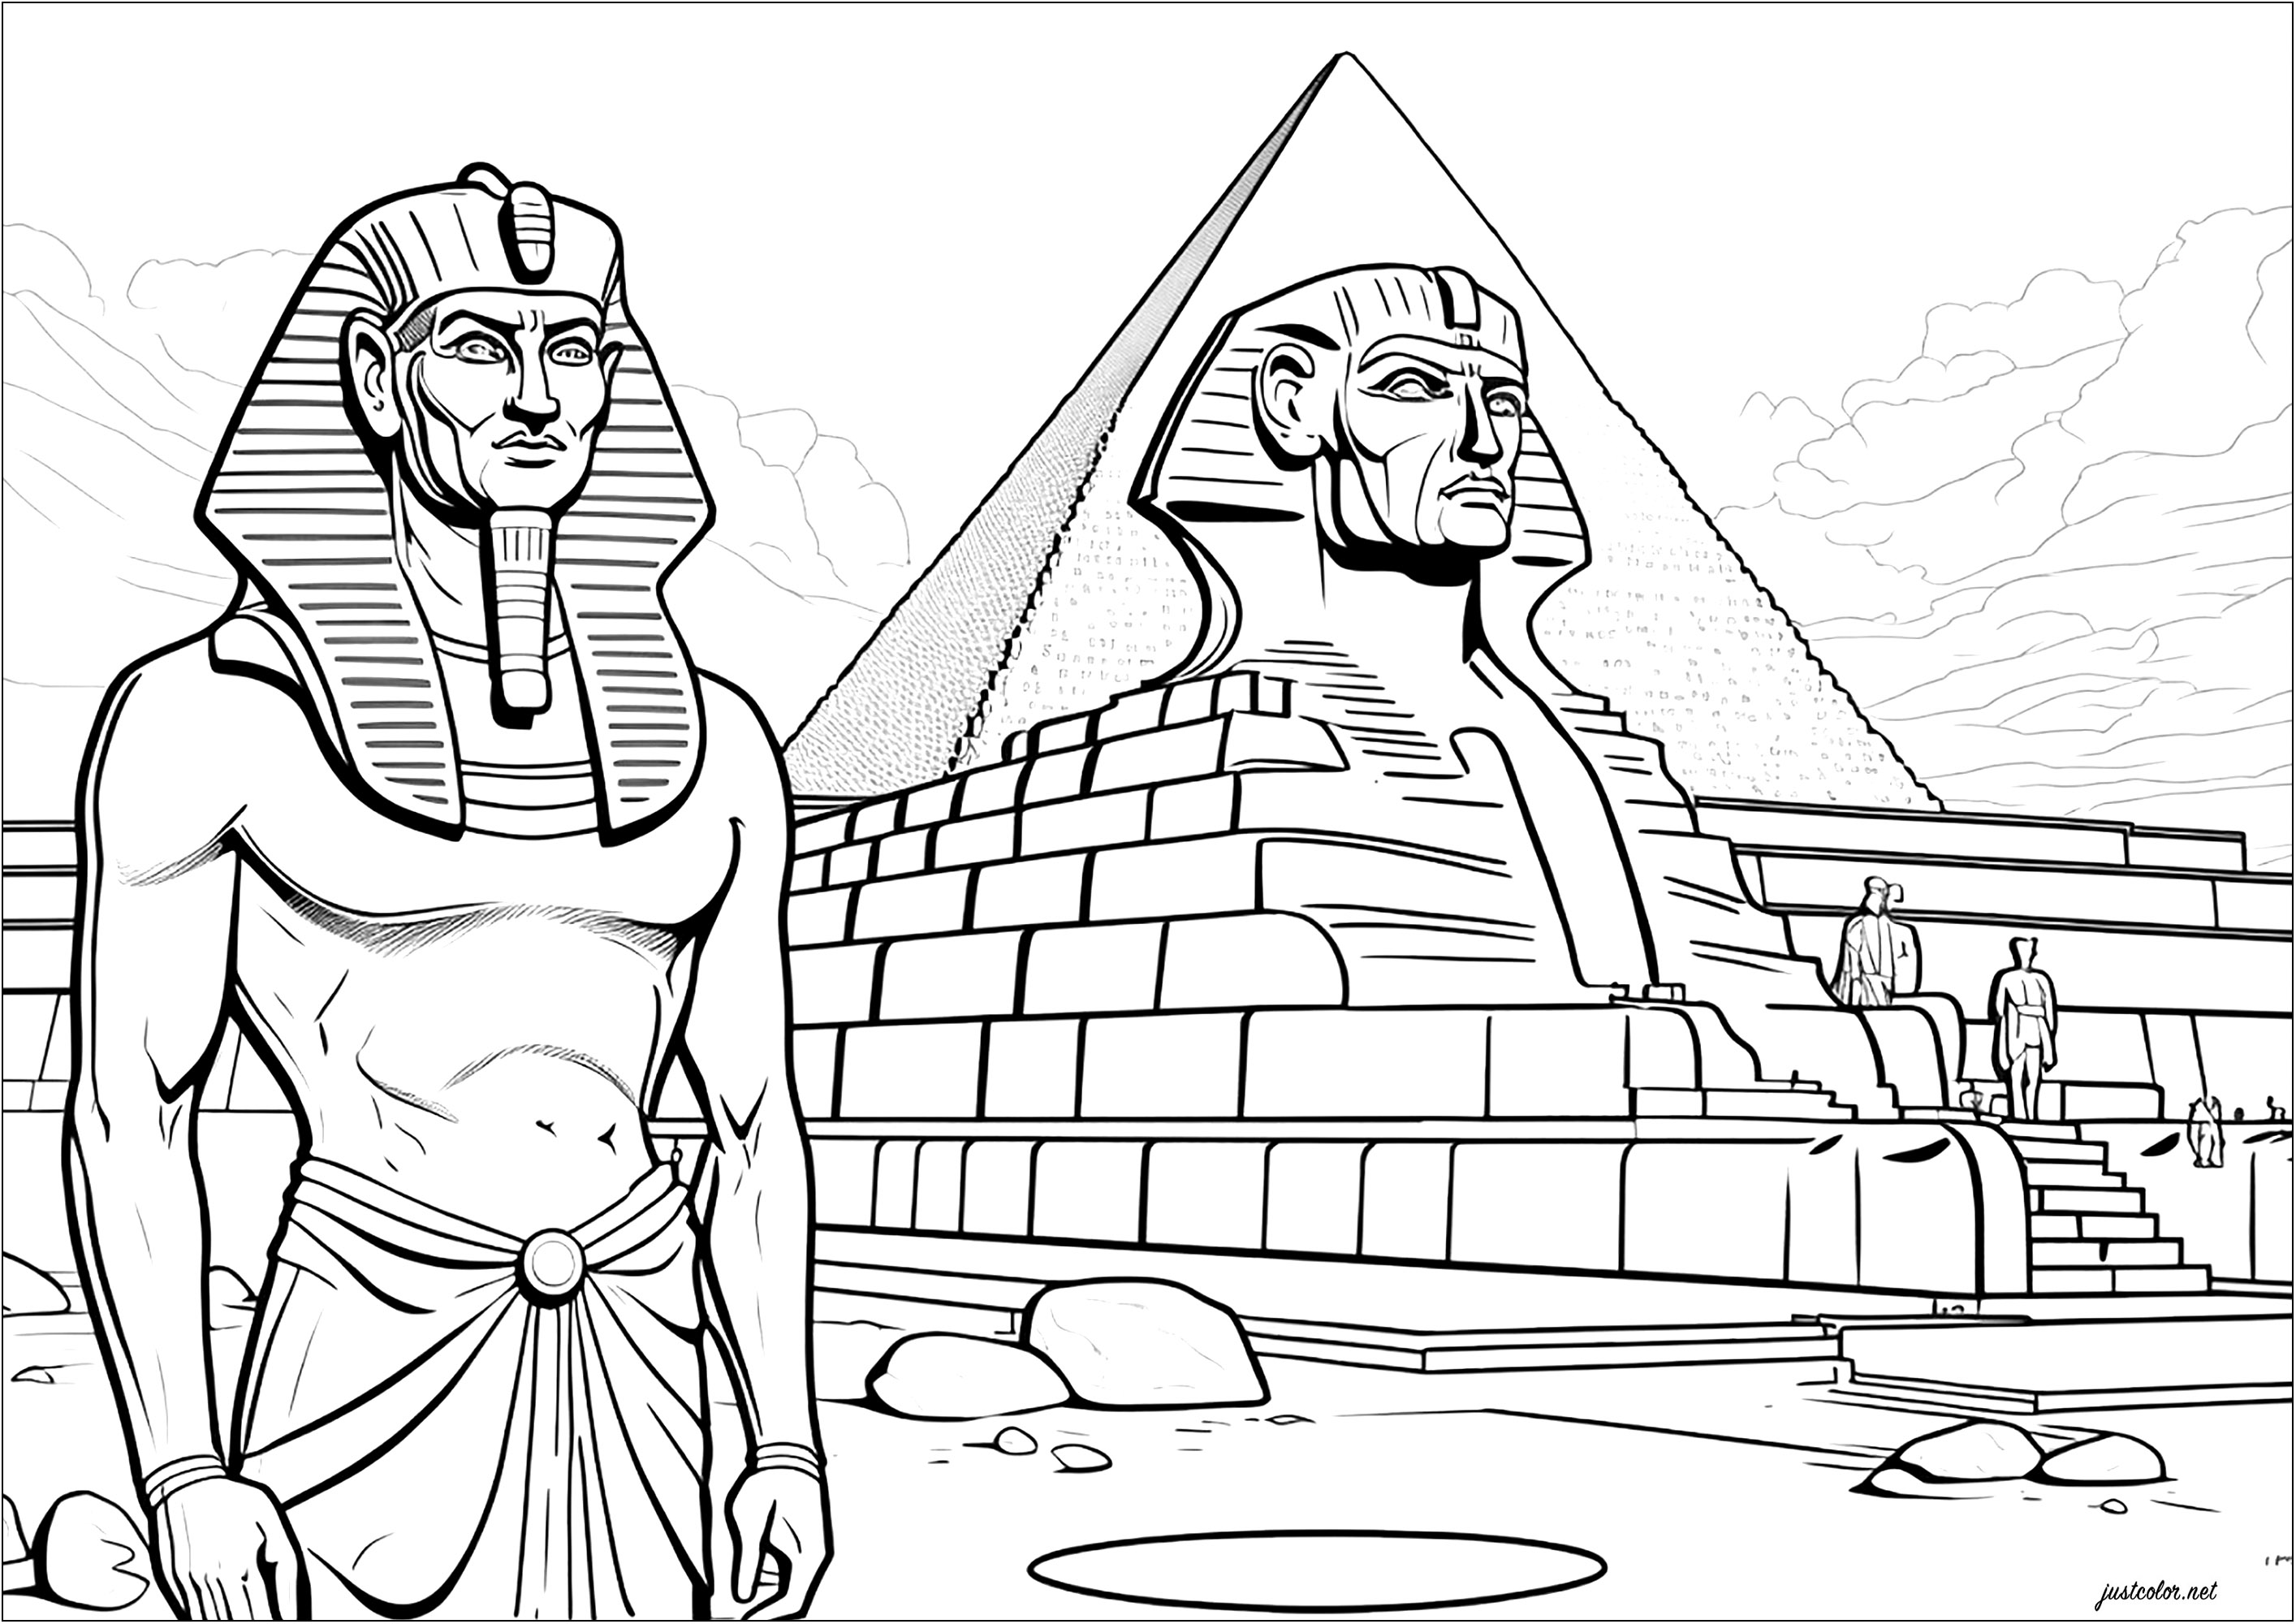 O Faraó em frente da sua esfinge e da sua pirâmide. Esta página para colorir representa um faraó diante de uma esfinge que o representa e de uma grande pirâmide. É uma magnífica representação do antigo Egipto e da sua grandeza.